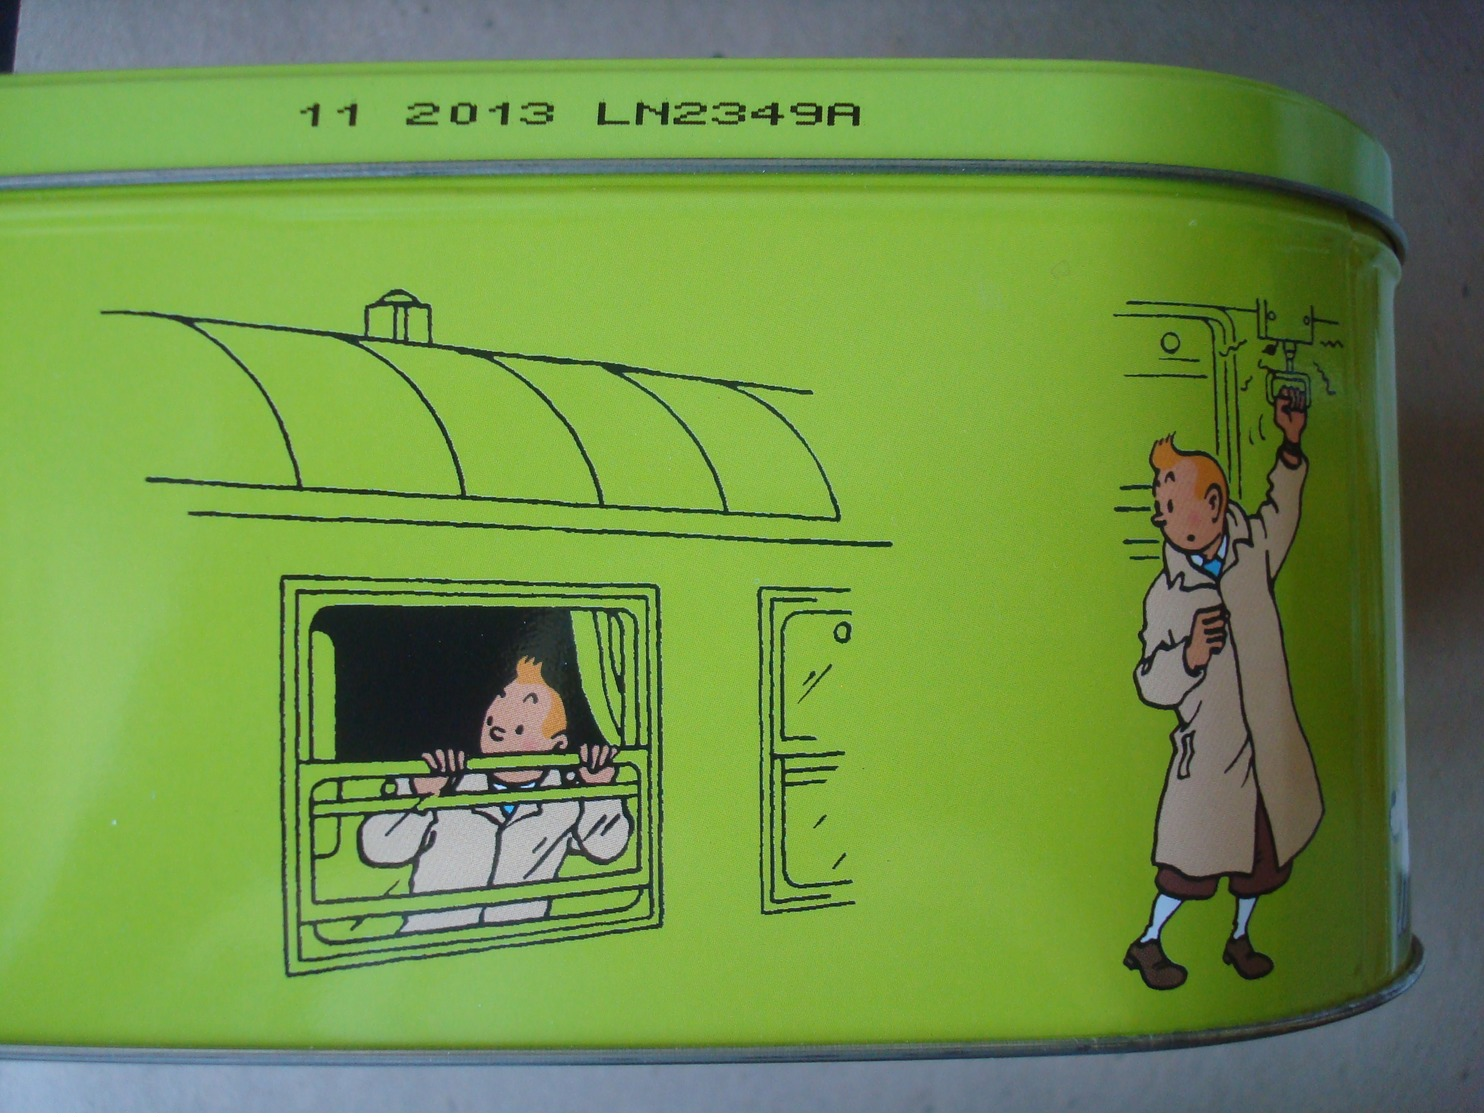 Tintin Et Les Trains. - Boîte Métallique Delacre 2012. - Objets Publicitaires